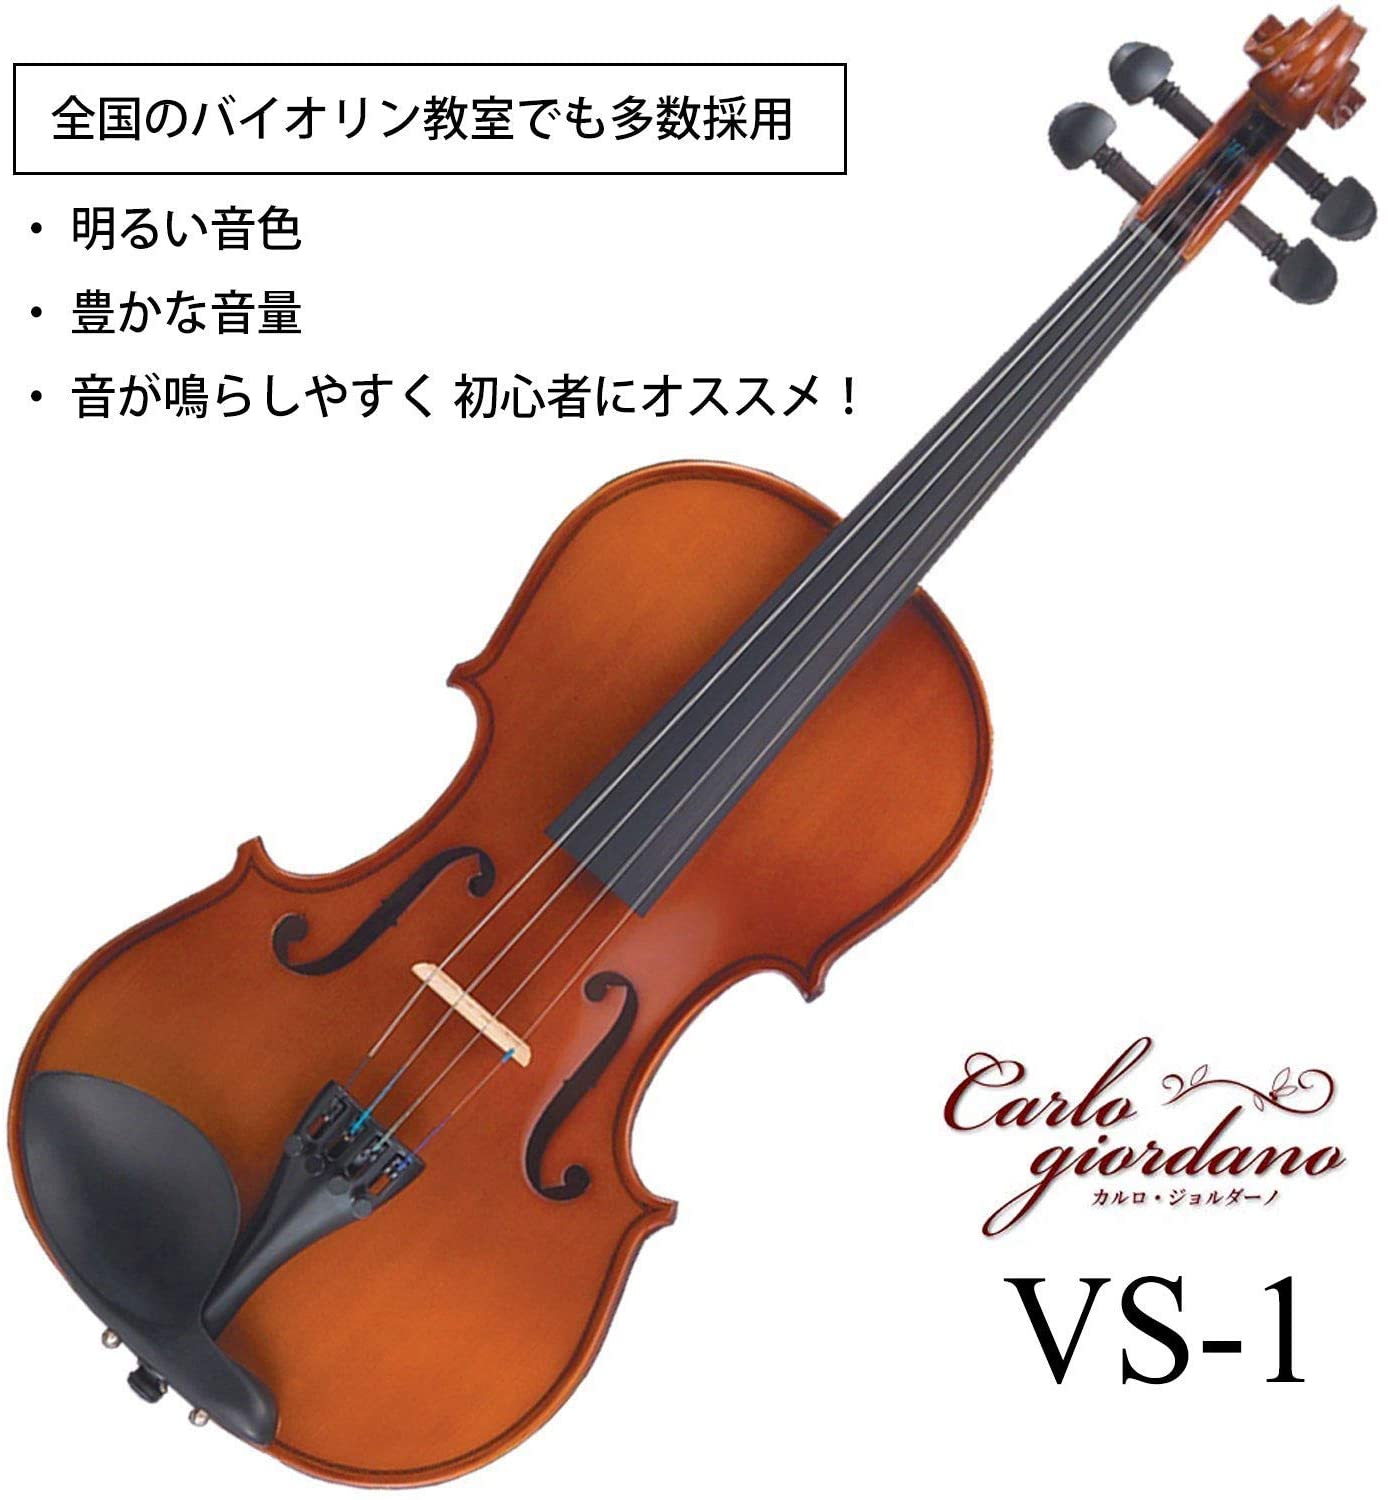 新品 カルロジョルダーノ バイオリンセット Vs 1c 1 16 おれんじケース フロントップ店 手数料安い Hazle Com